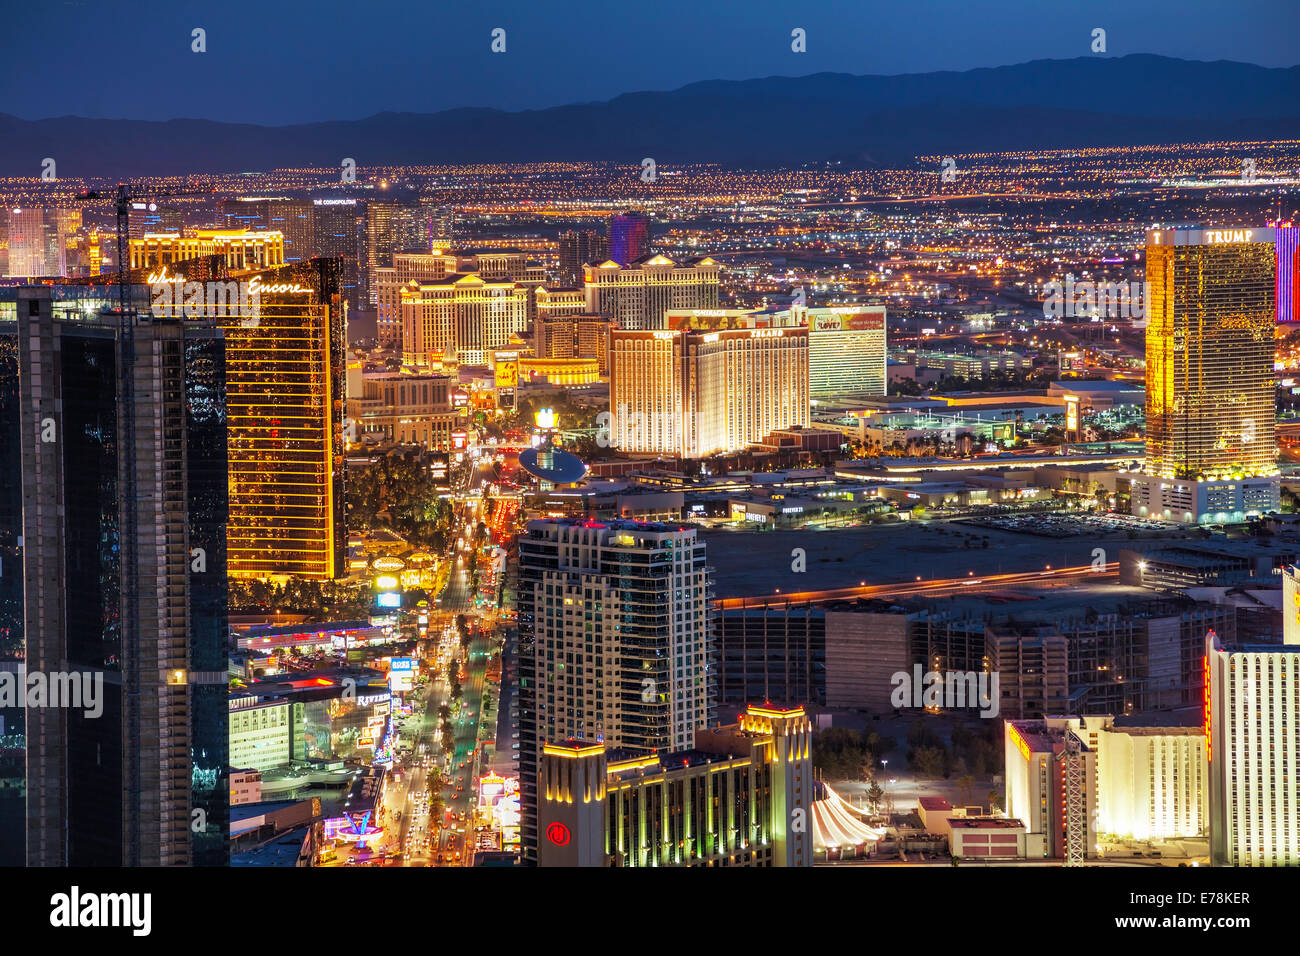 LAS VEGAS - 20 Aprile: panoramica del centro di Las Vegas nella notte il 20 aprile 2014 a Las Vegas. È la città più popolosa Foto Stock